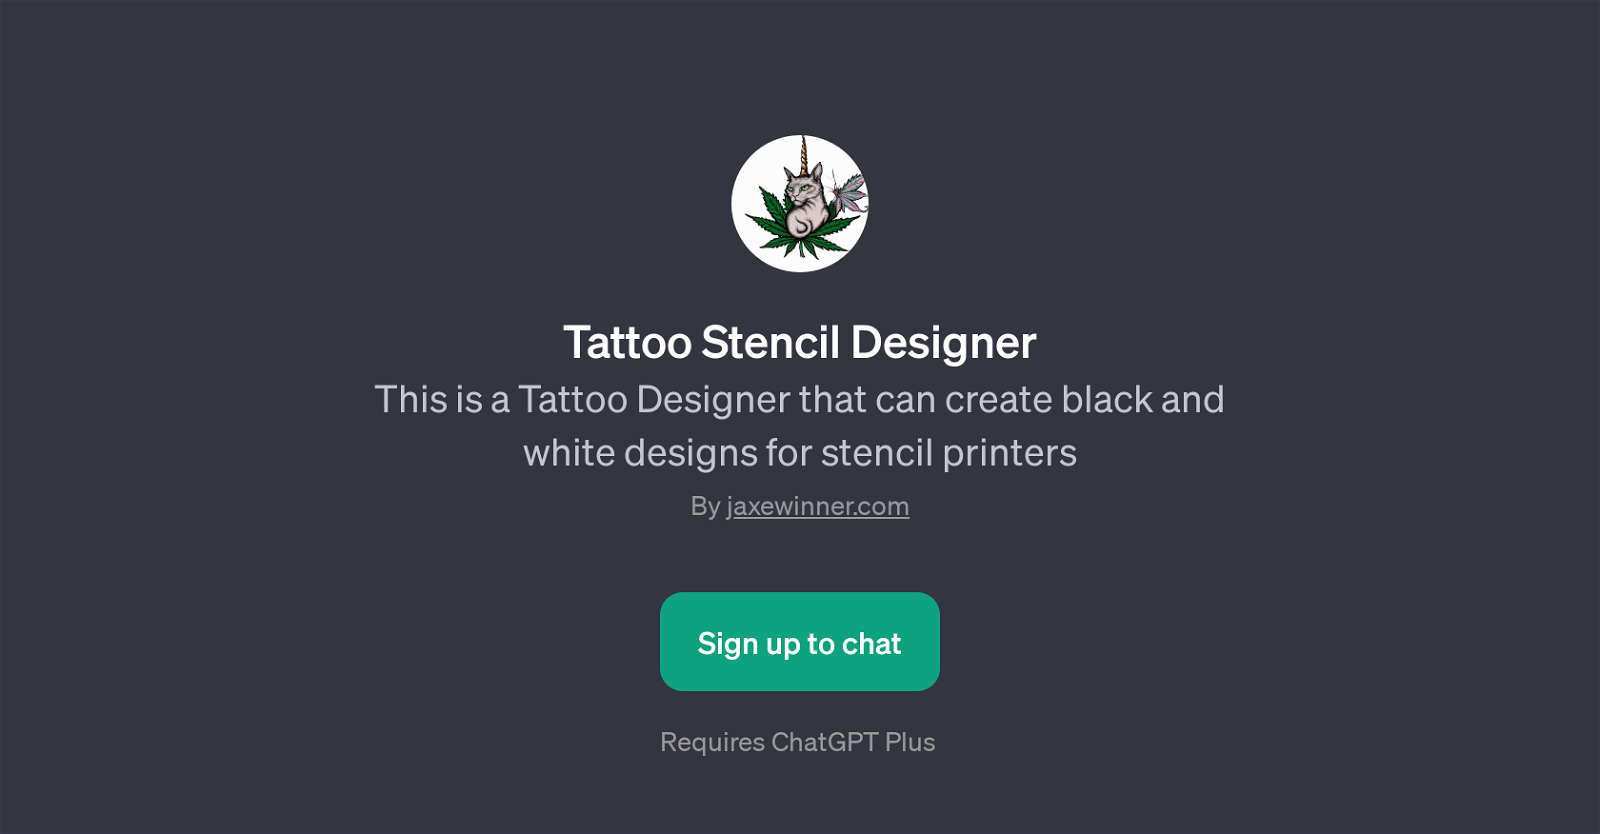 Tattoo Stencil Designer website